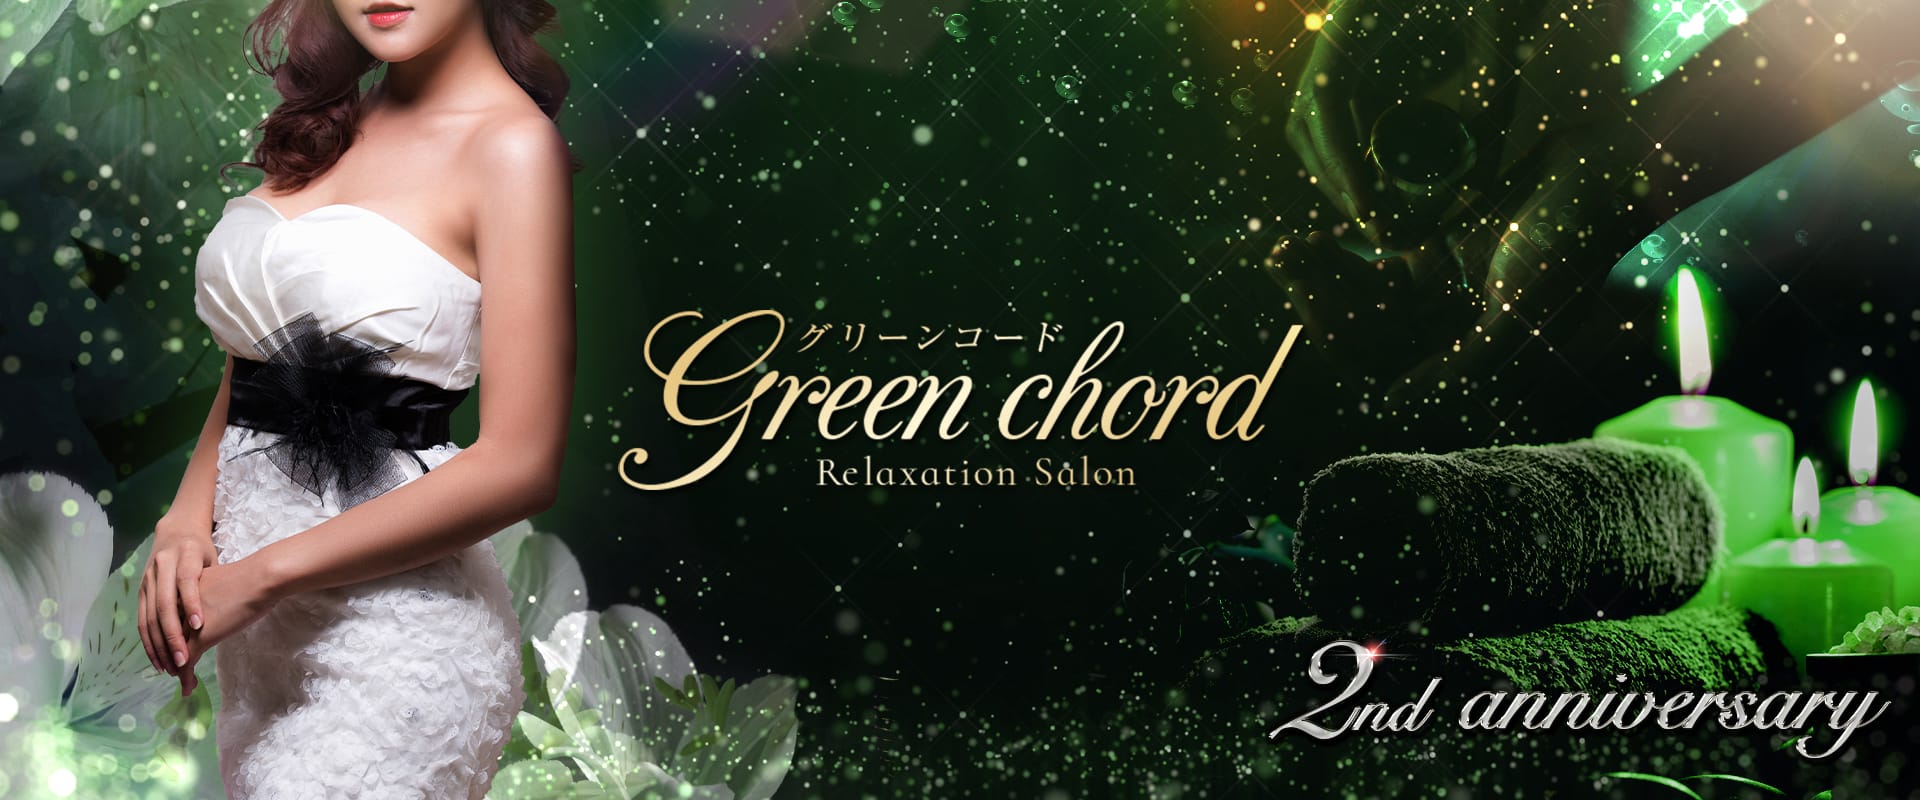 Green chord グリーンコード